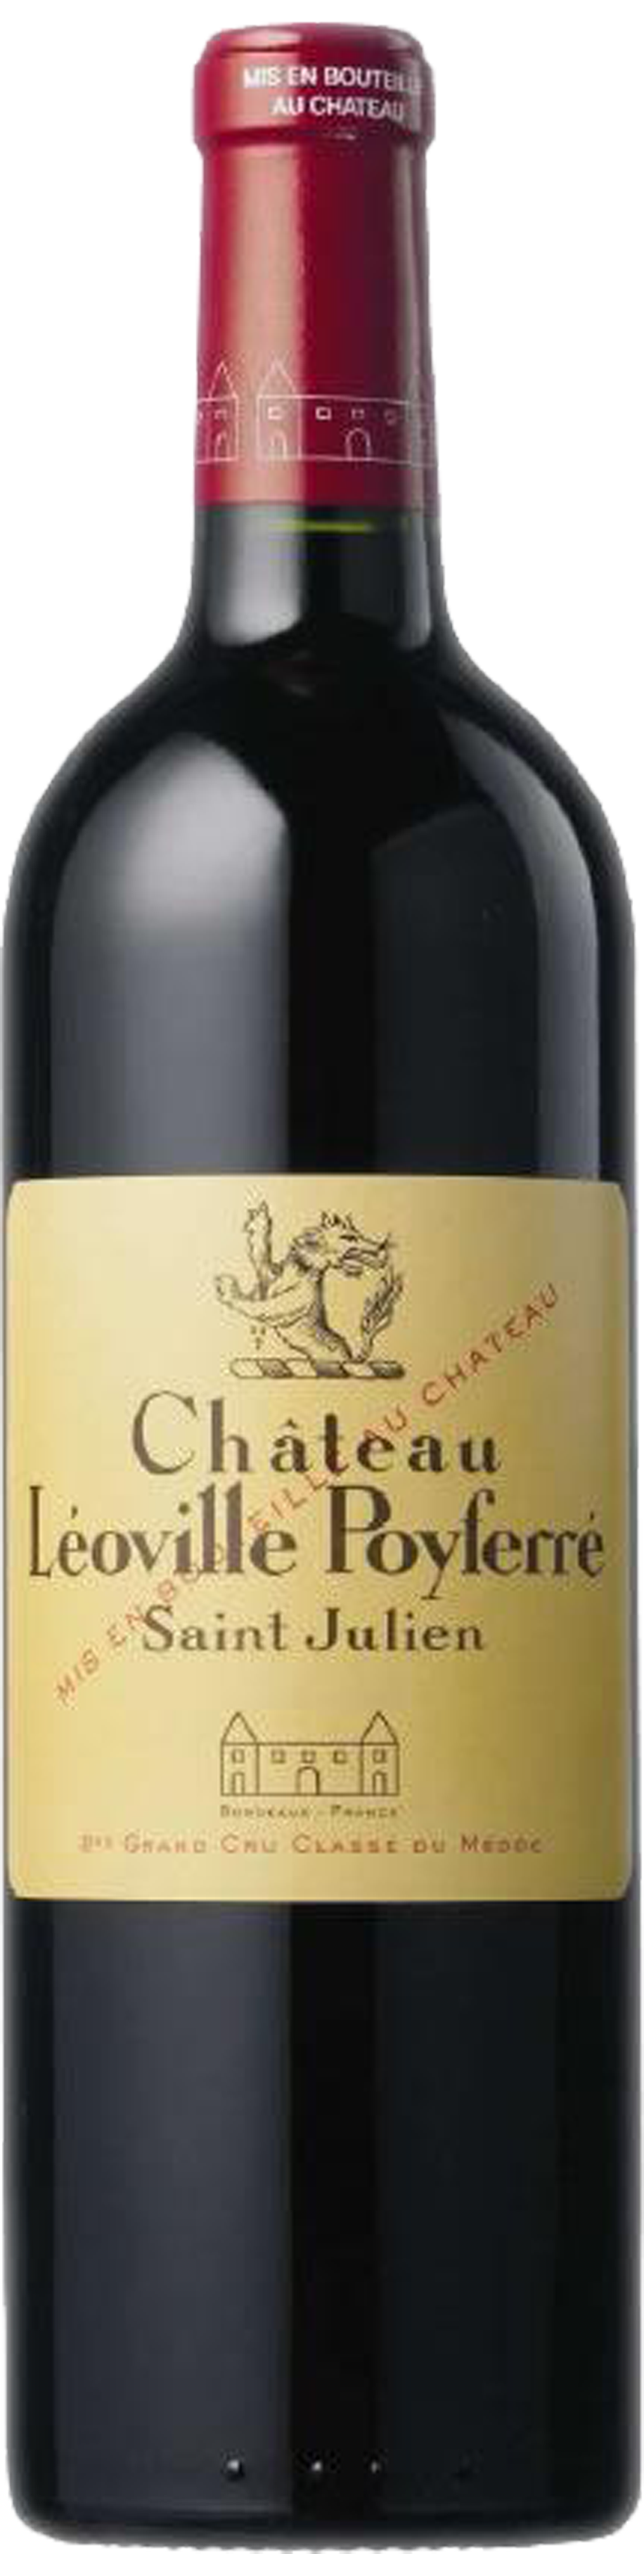 Bottle shot of 2005 Château Léoville Poyferré, 2ème Cru St Julien